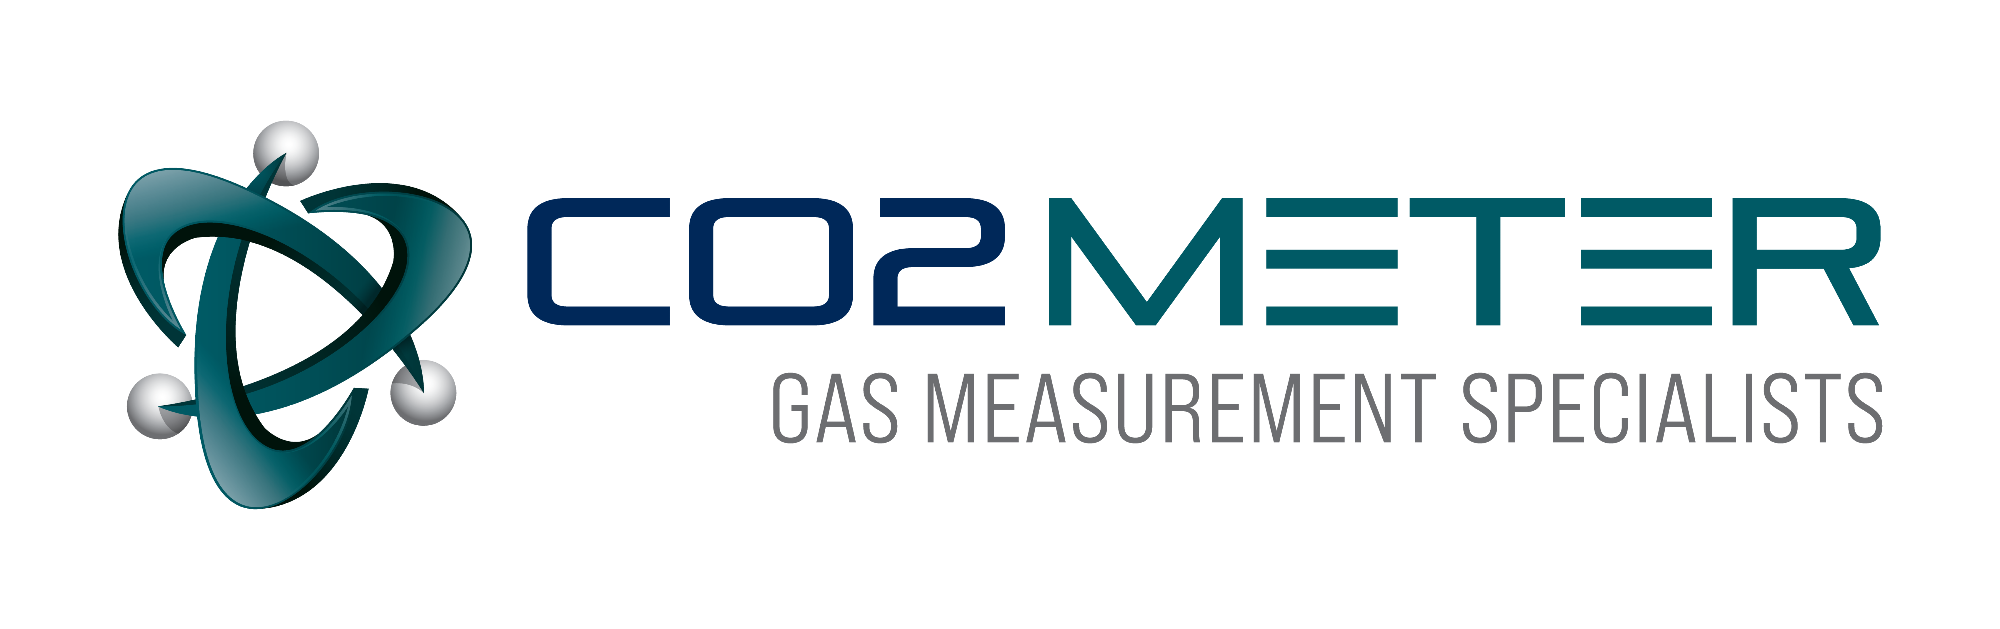 CO2Meter, Inc. logo.